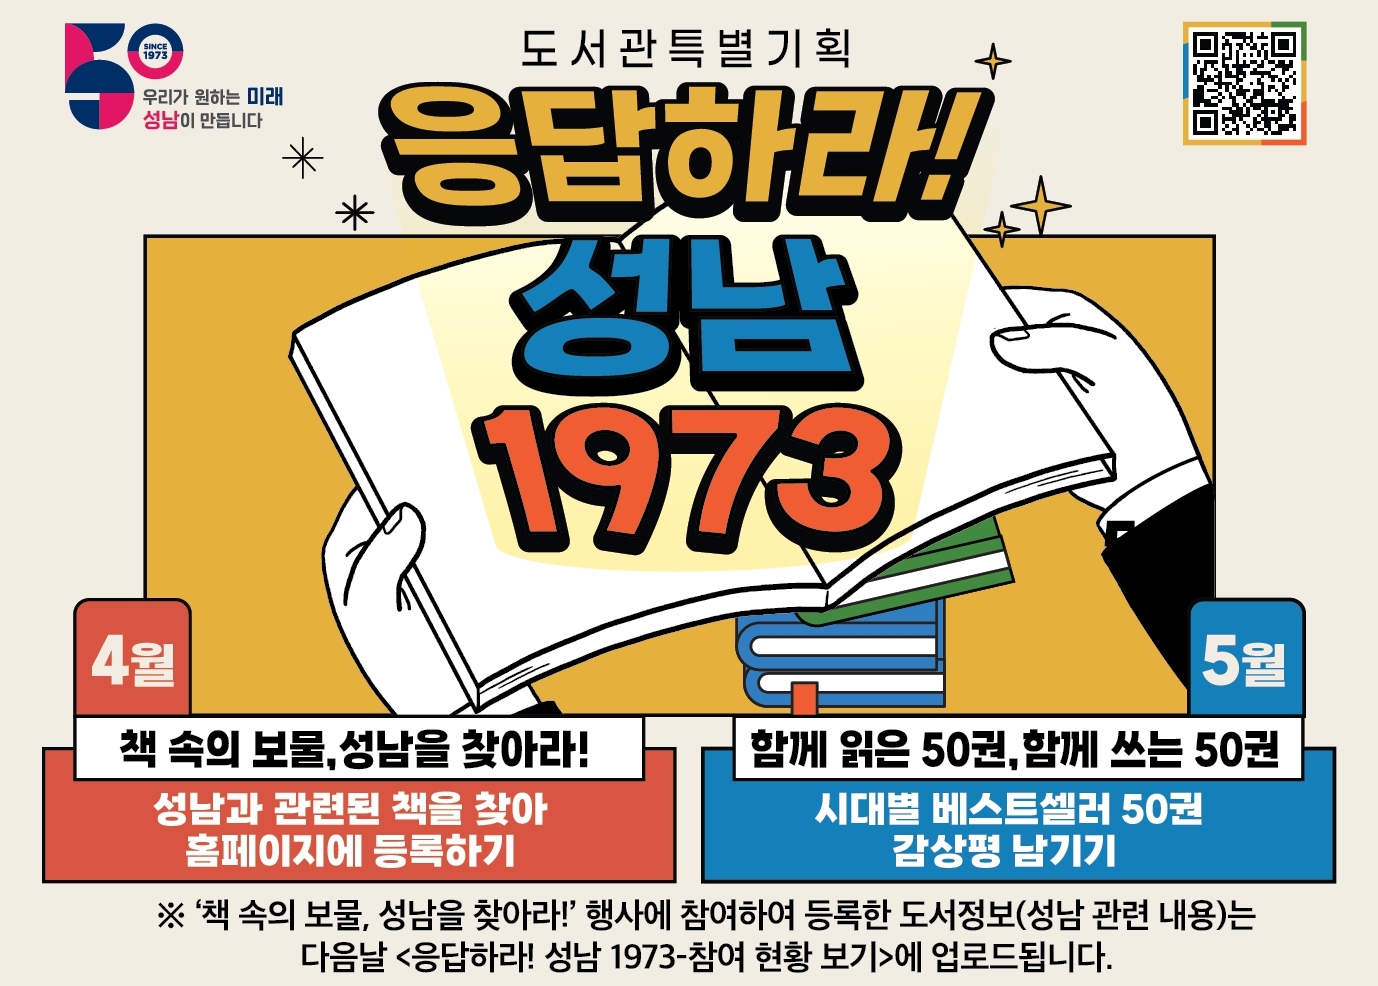  도서관특별기획 '응답하라! 성남 1973'